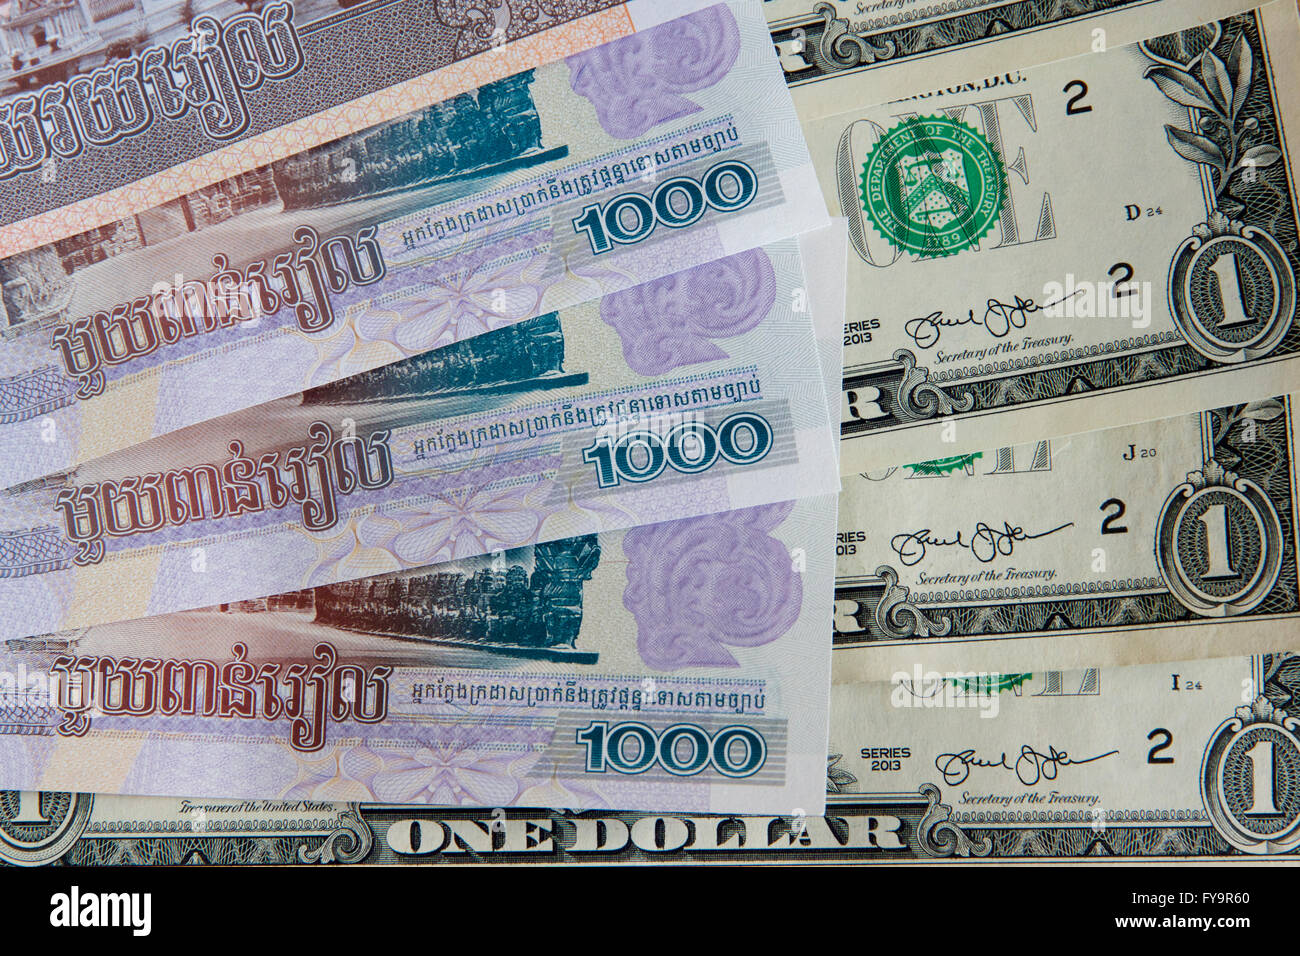 Kambodschanischer Riel und US-Dollar: Währung in Kambodscha. Stockfoto